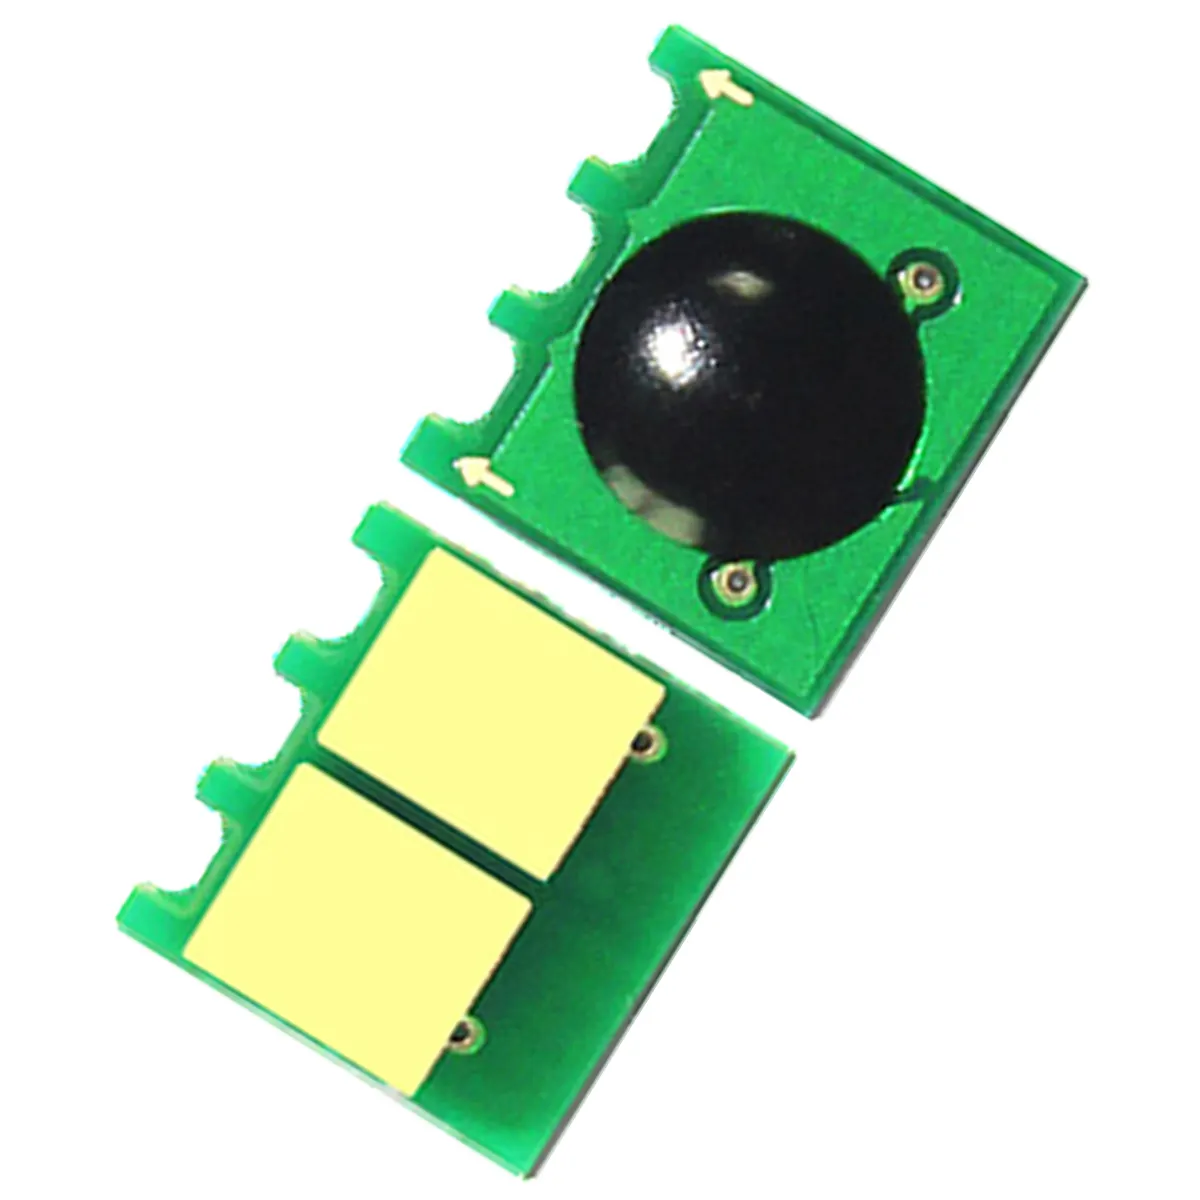 Chip Hộp mực laser cho HP máy bay phản lực Laser Đen p 1102W chip đen thông minh chip truy cập